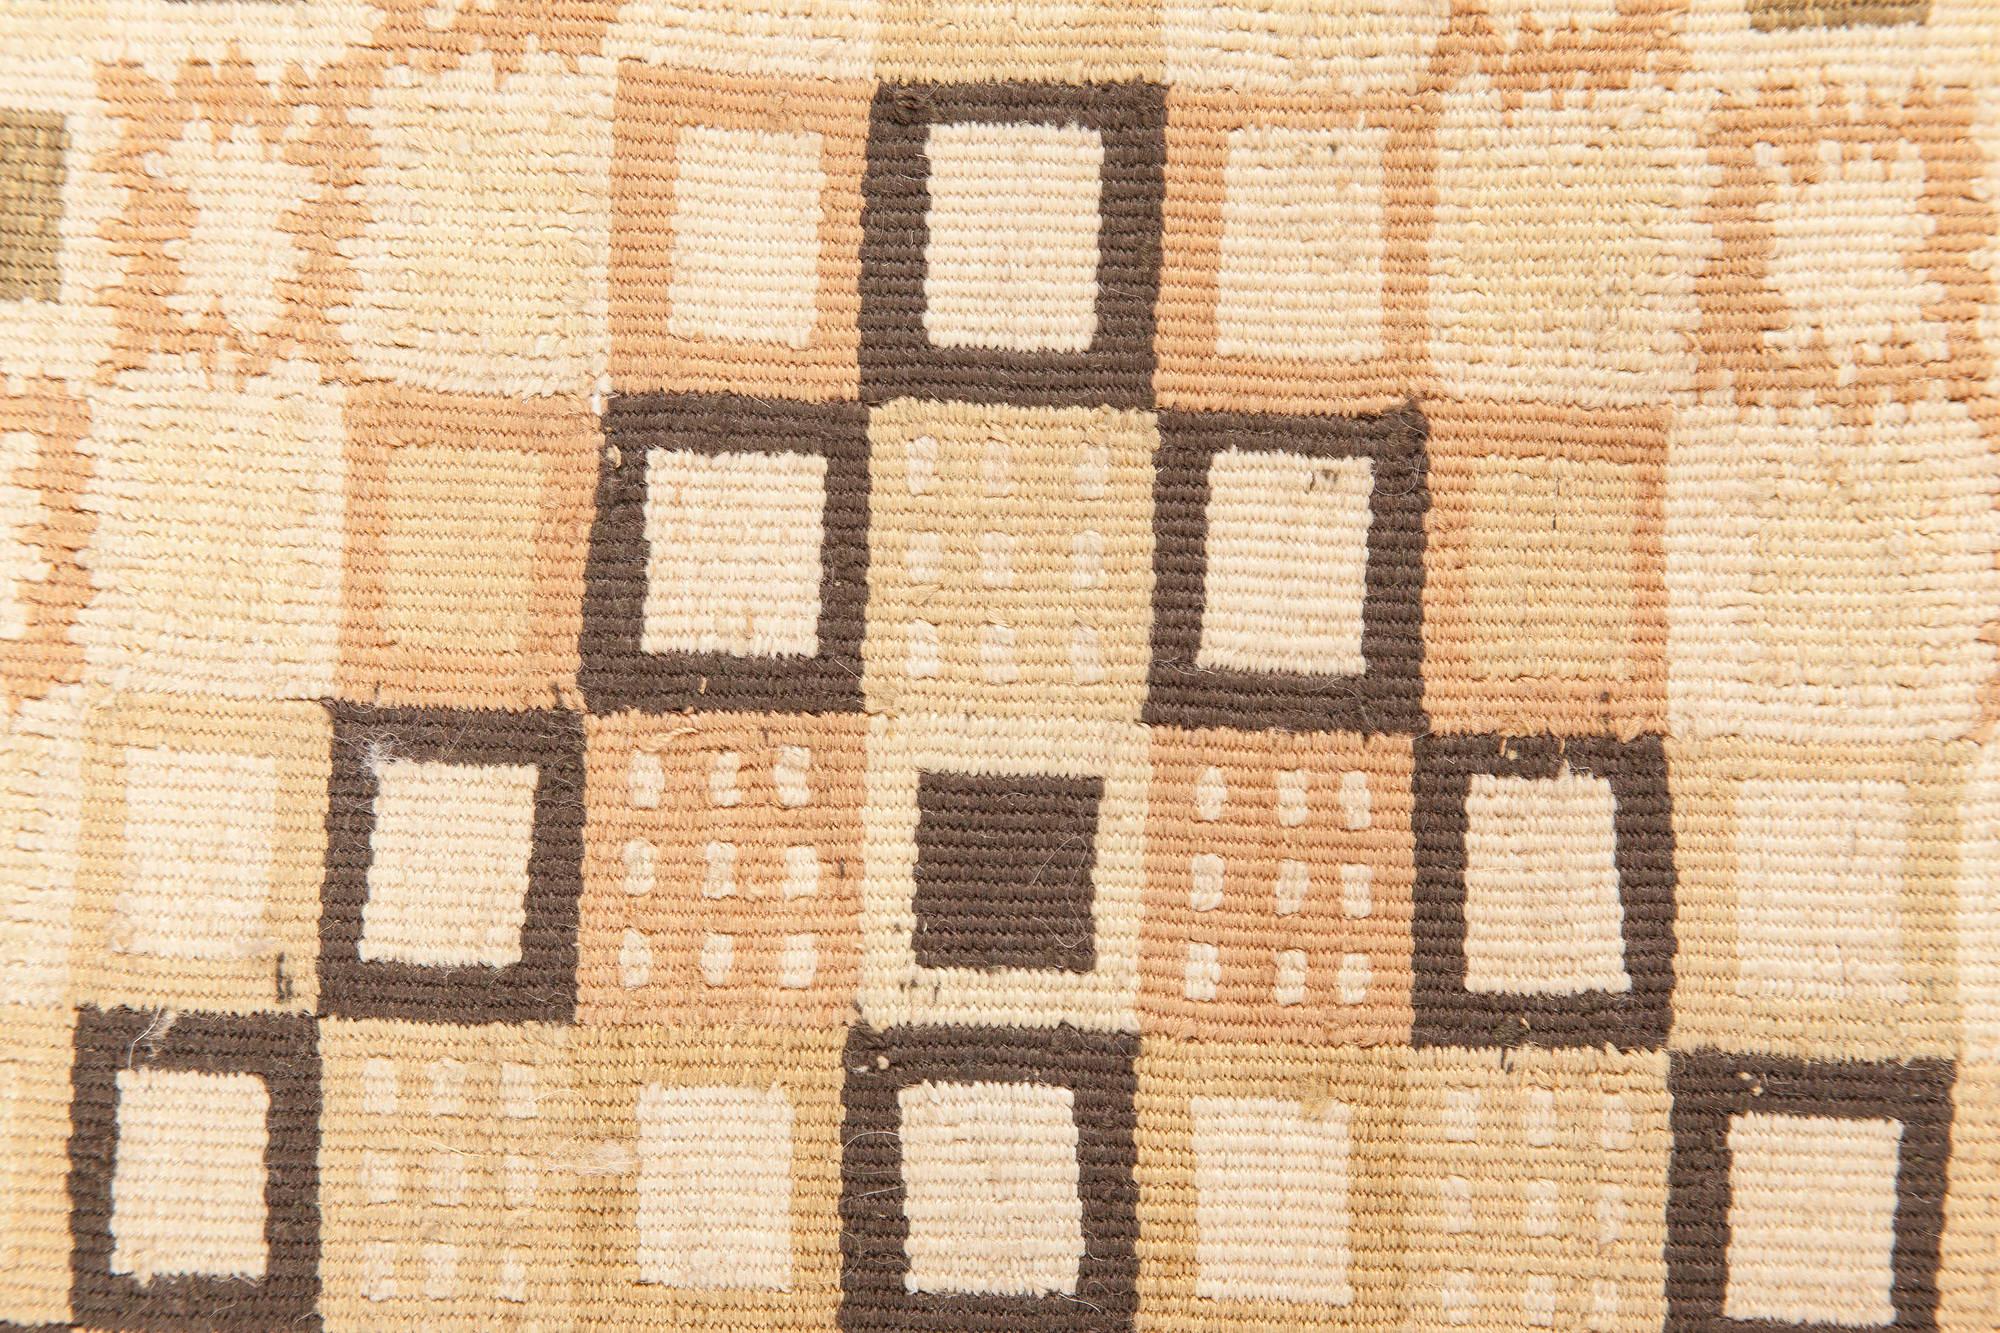 Swedish Design beige and brown flat-weave wool rug by Doris Leslie Blau.
Size: 3'10